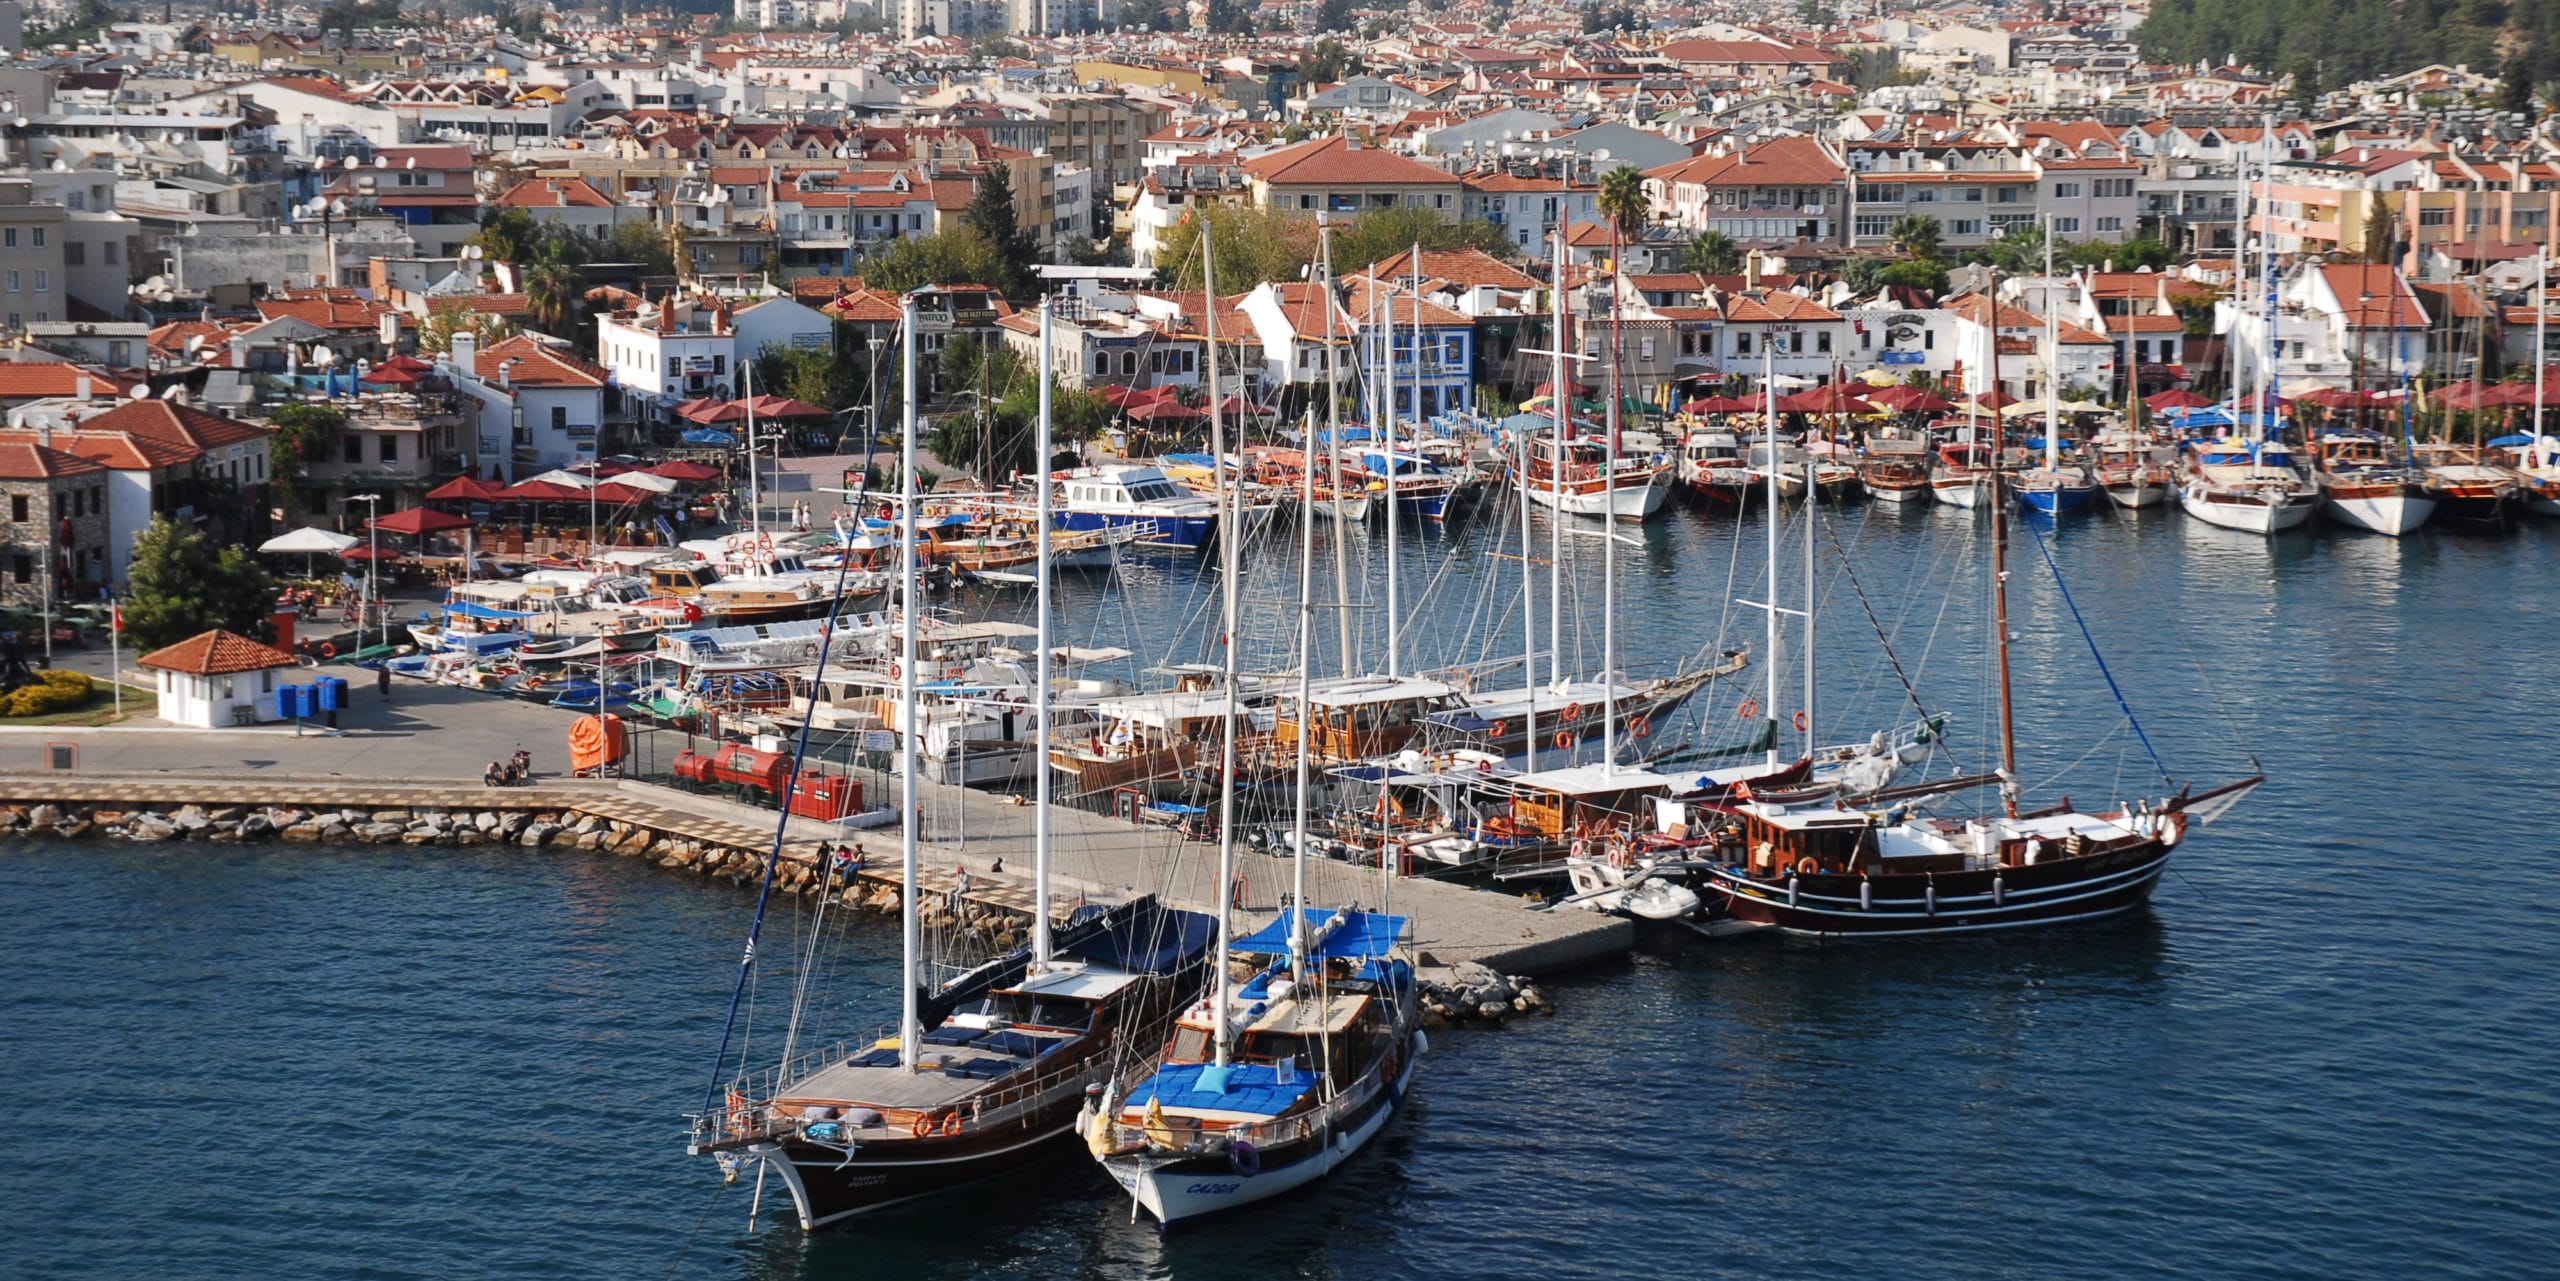 Голубой круиз, который обязательно нужно увидеть: самый большой музыкальный фонтан в Эгейском море в Турции